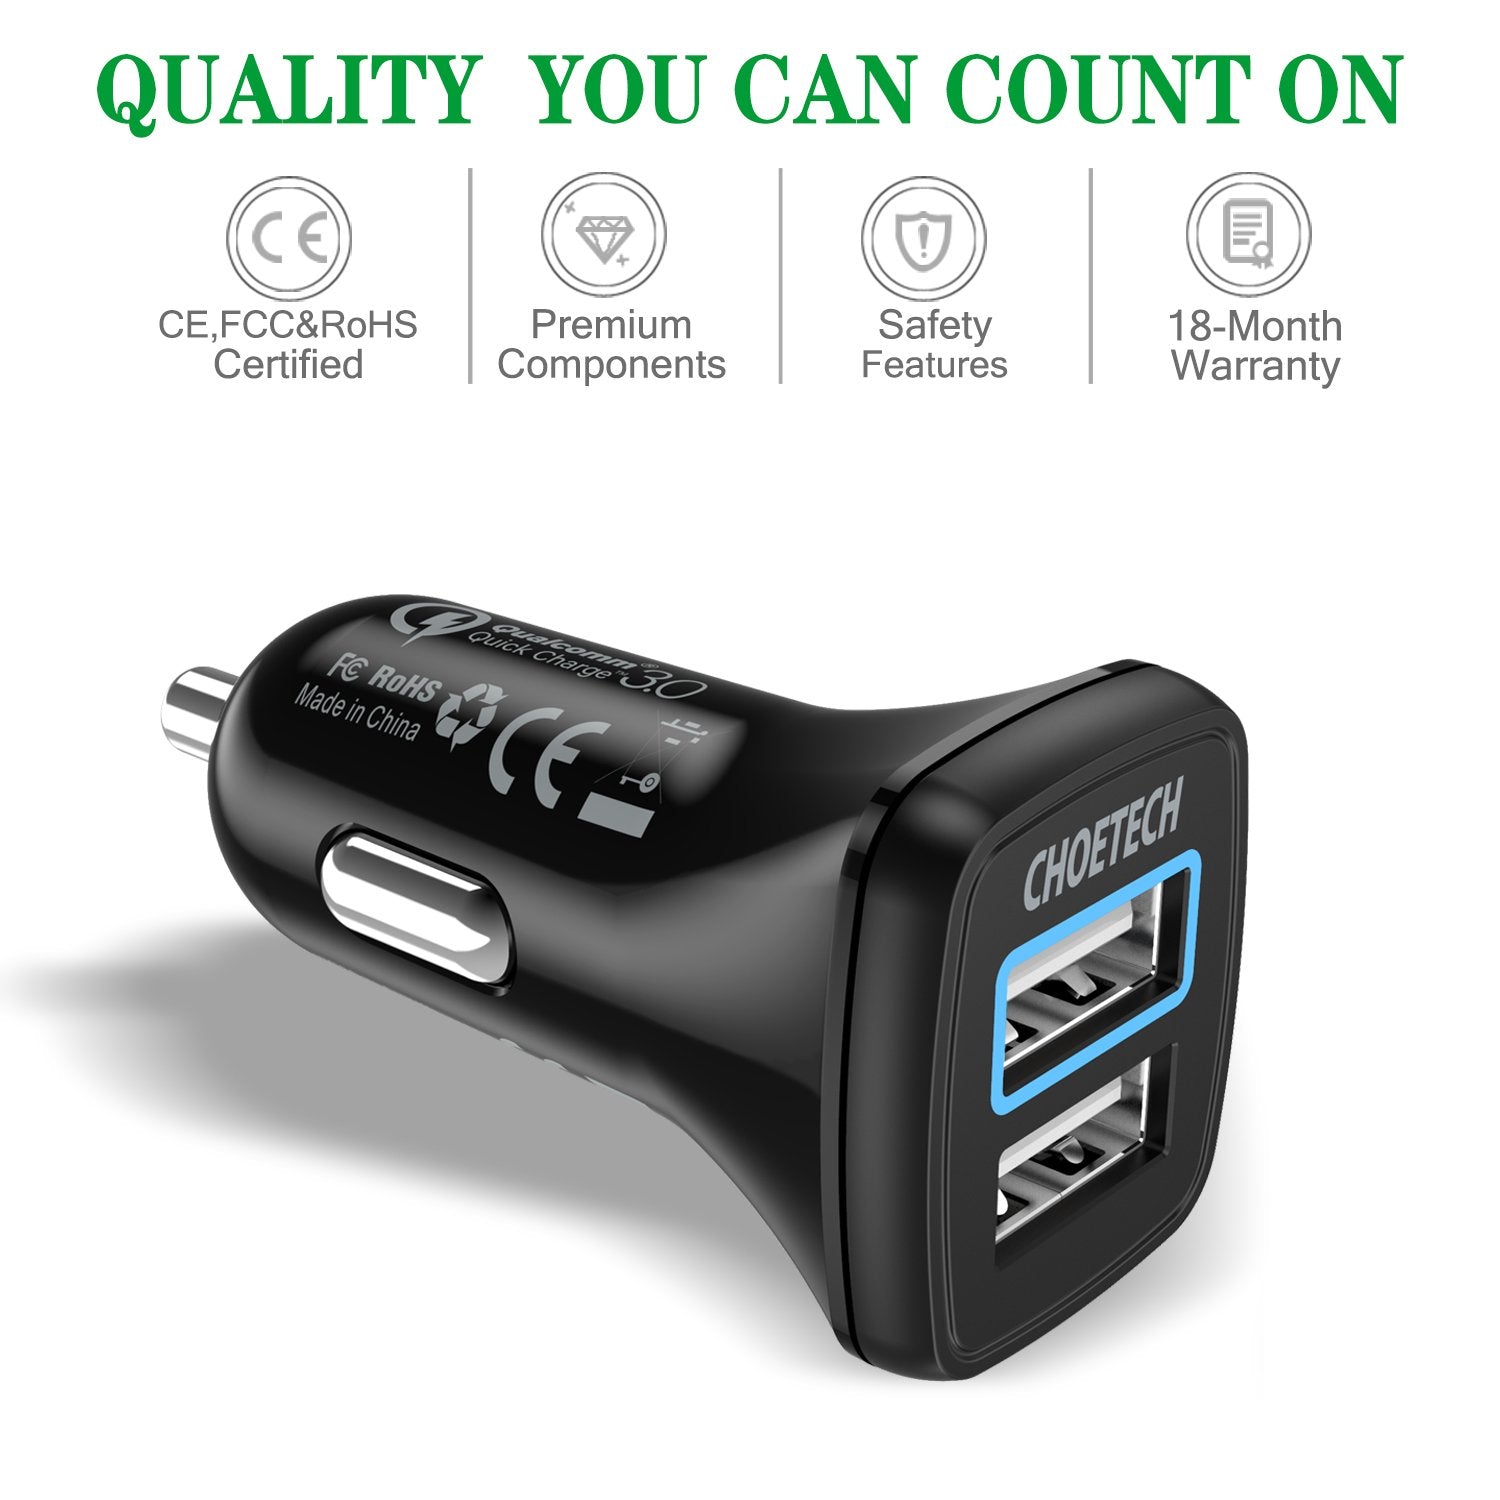 C0051 Chargeur de voiture Quick Charge 3.0 Tech 30W avec câble USB